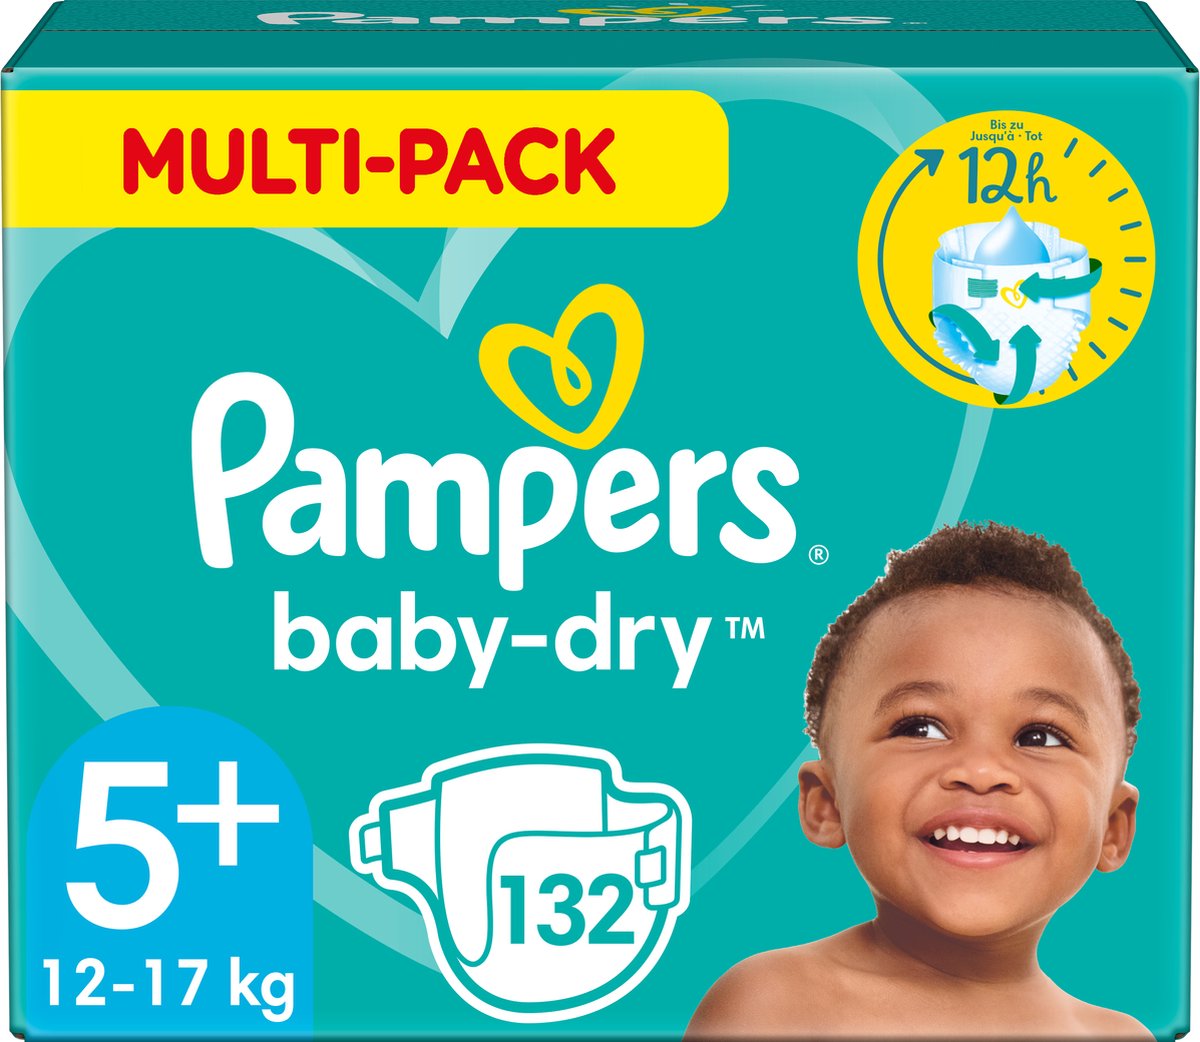 Pampers Baby-Dry Luiers - Maat 5+ (12-17 kg) - 132 stuks - Multi-Pack - Pampers